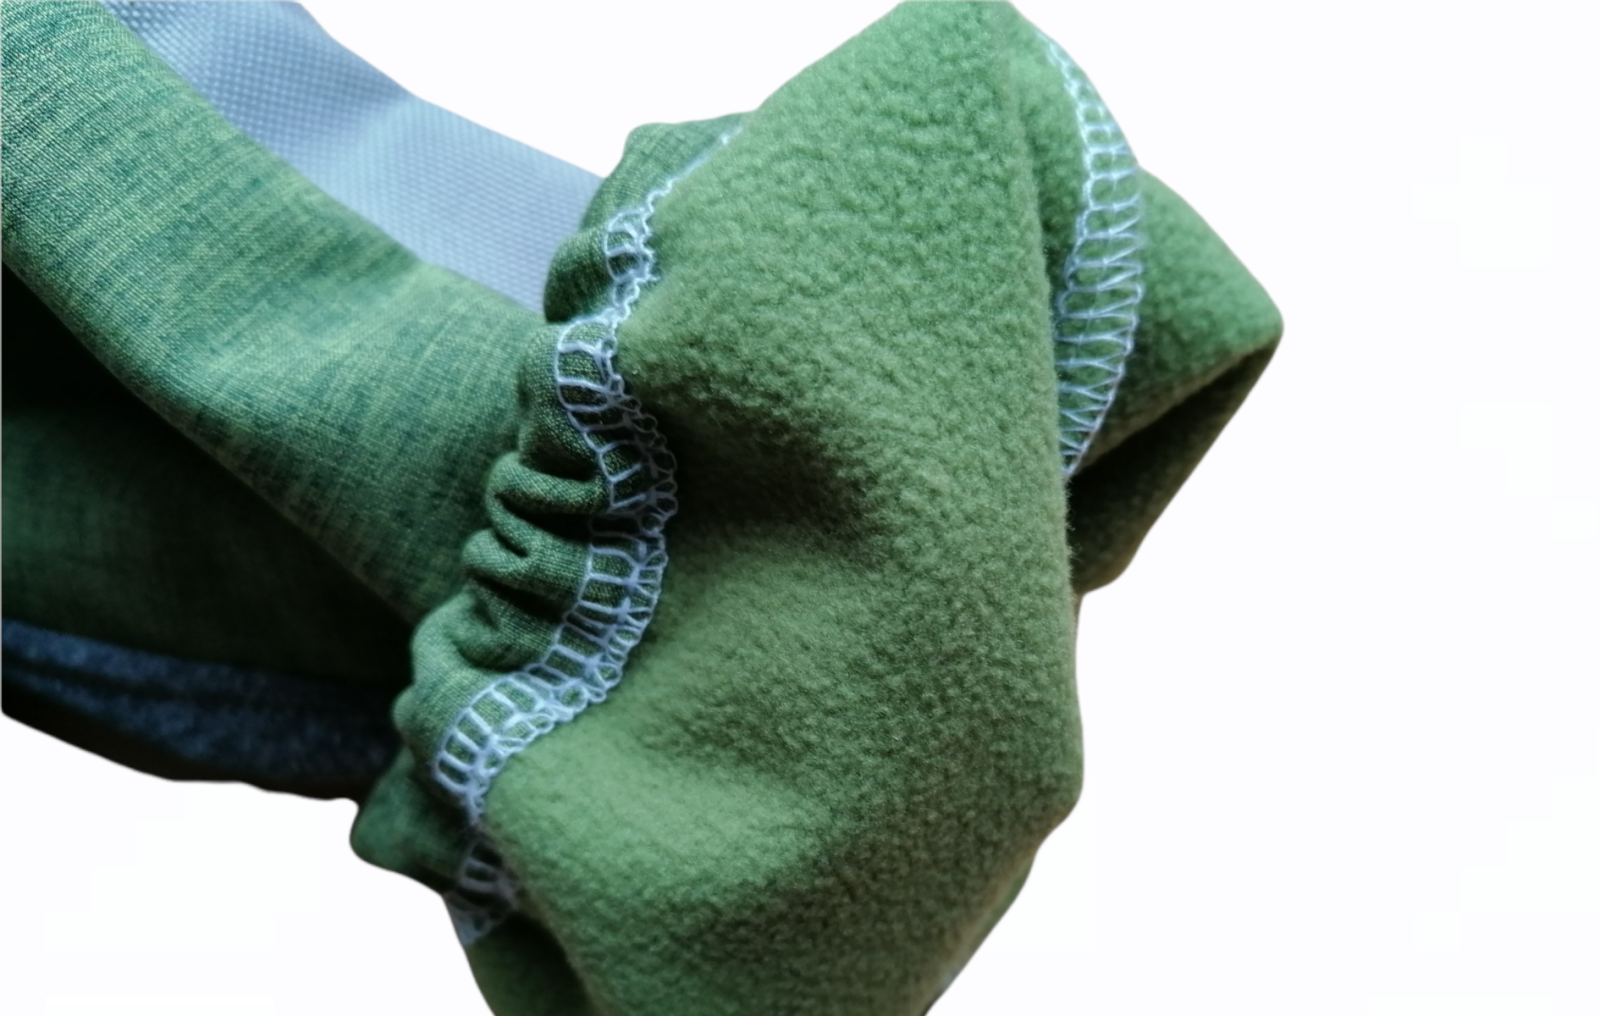 Softshellhose für Babys und Kinder mit Cordura-Belegen an Knie und Po Grün-meliert Grau ideal für Krabbelkinder und Waldkindergarten 6